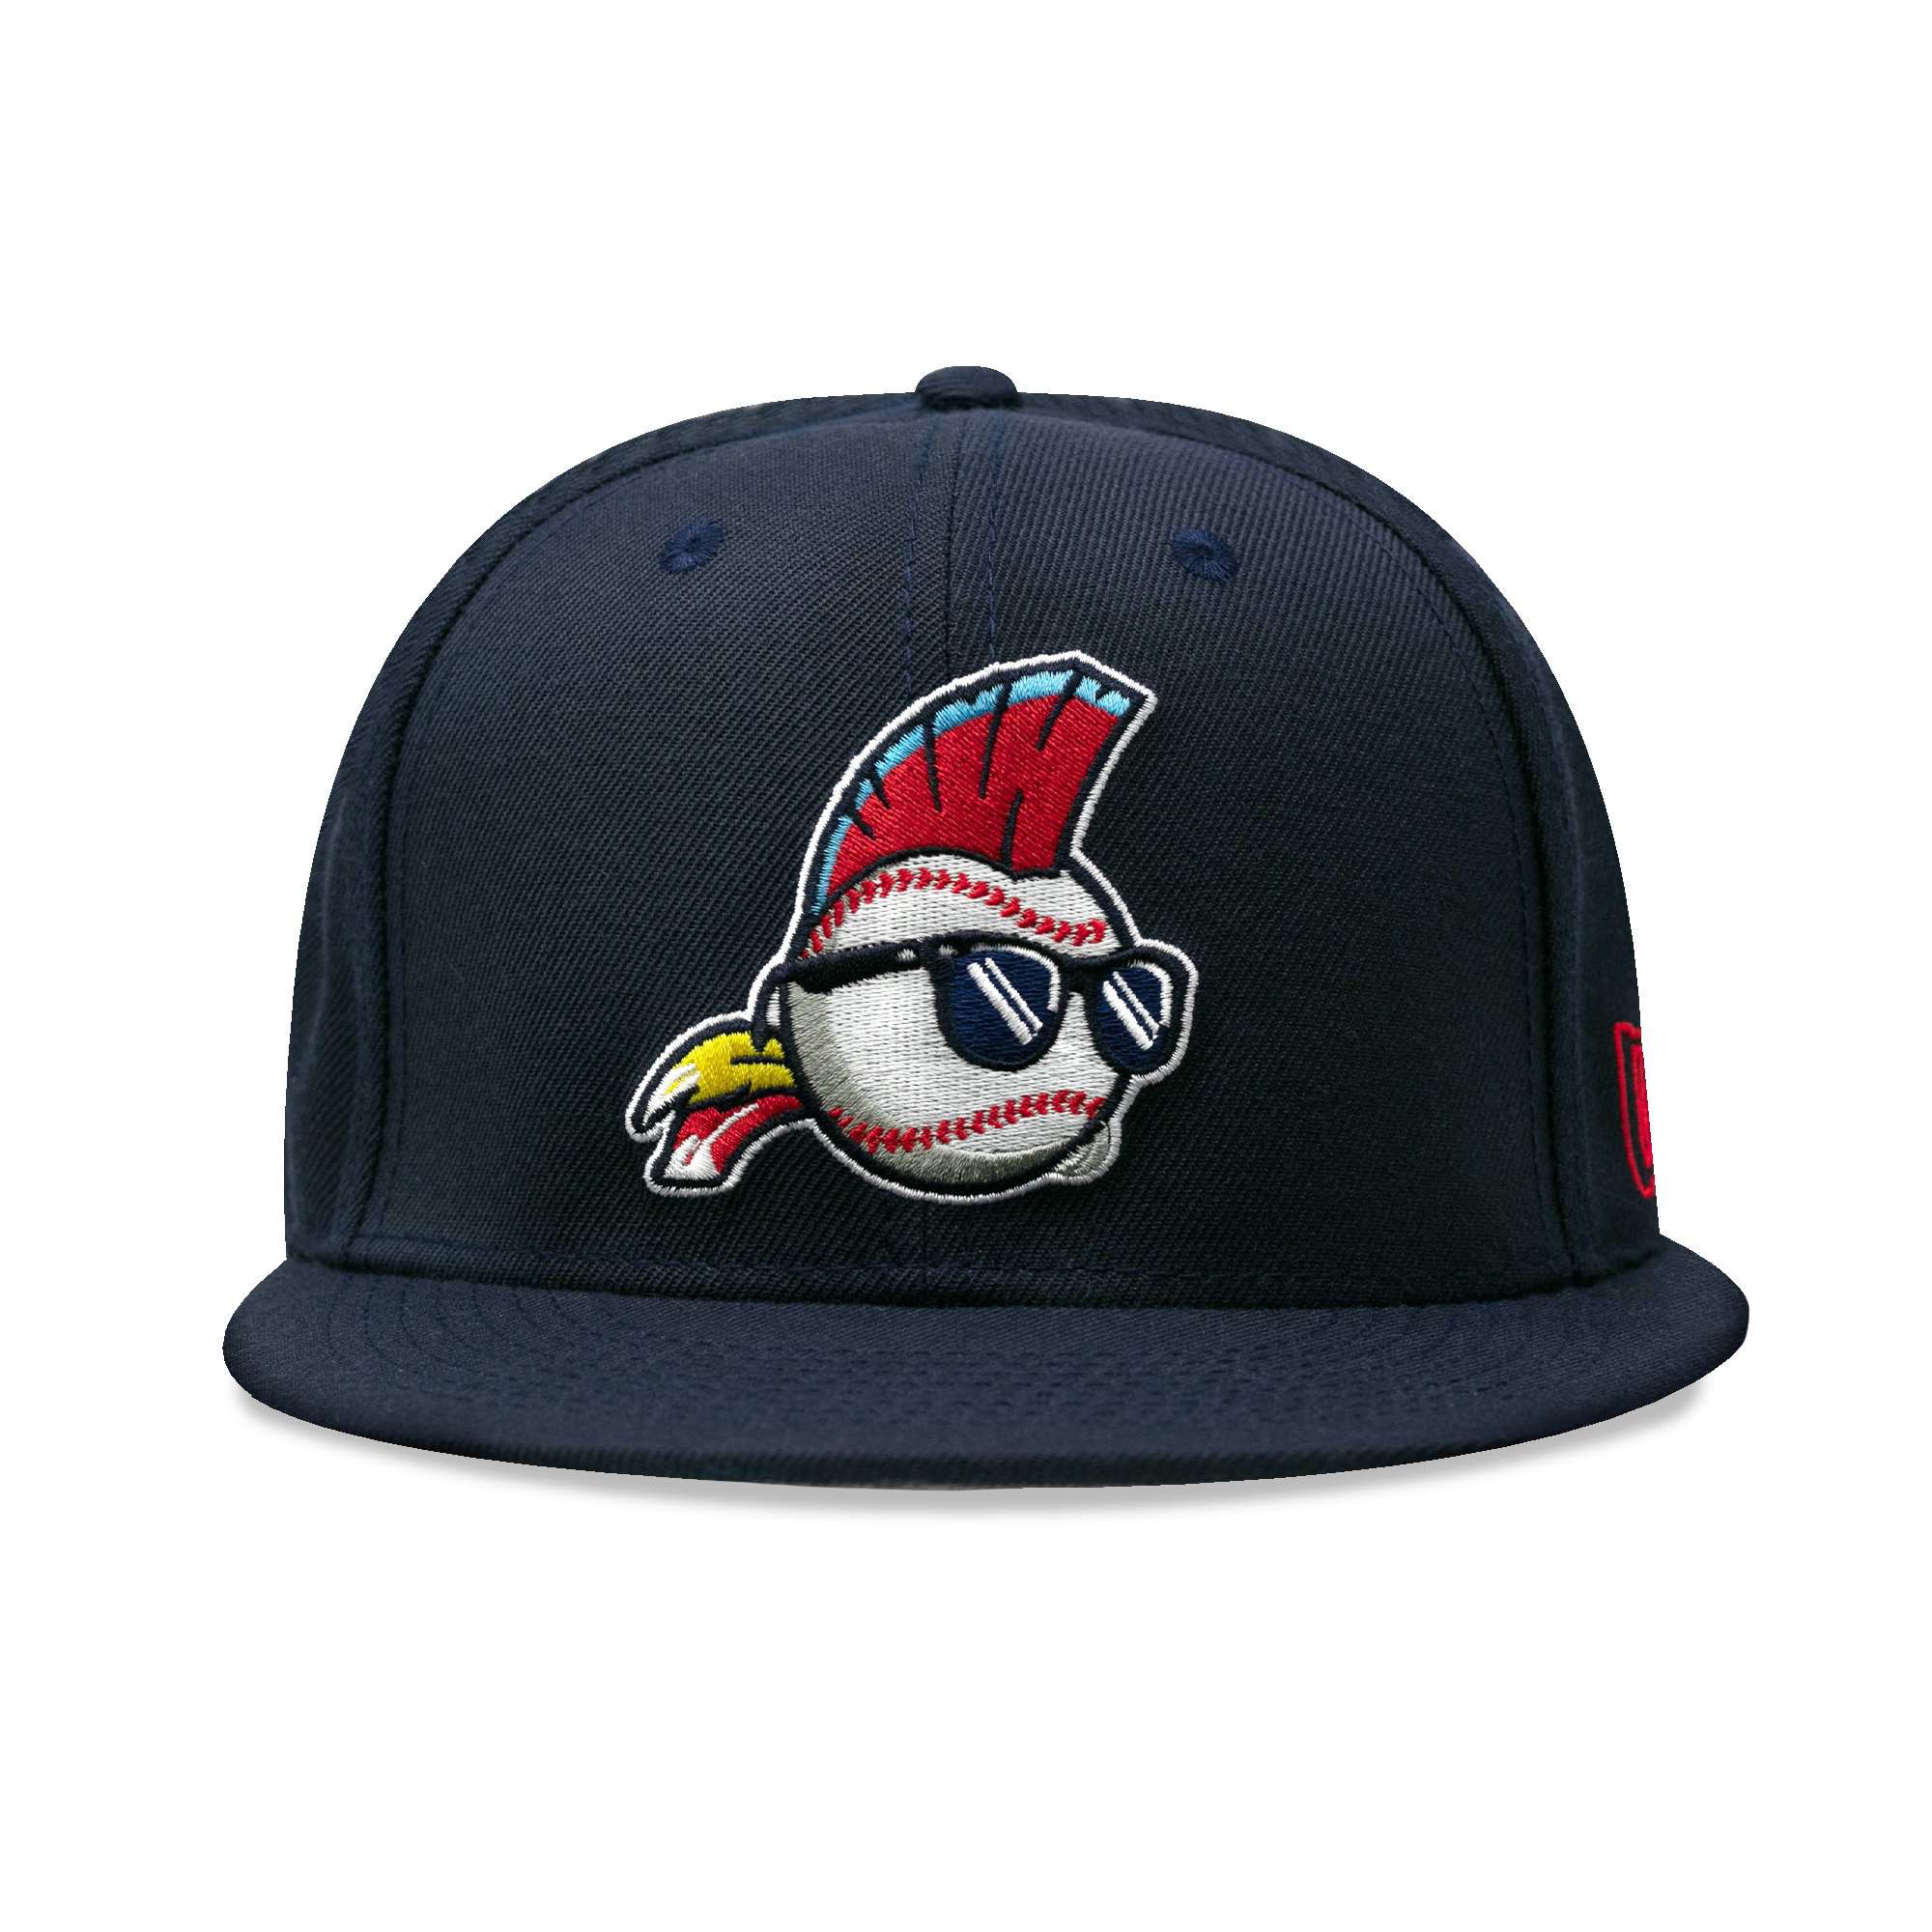 USA x Baseballism Logo Cap - Navy